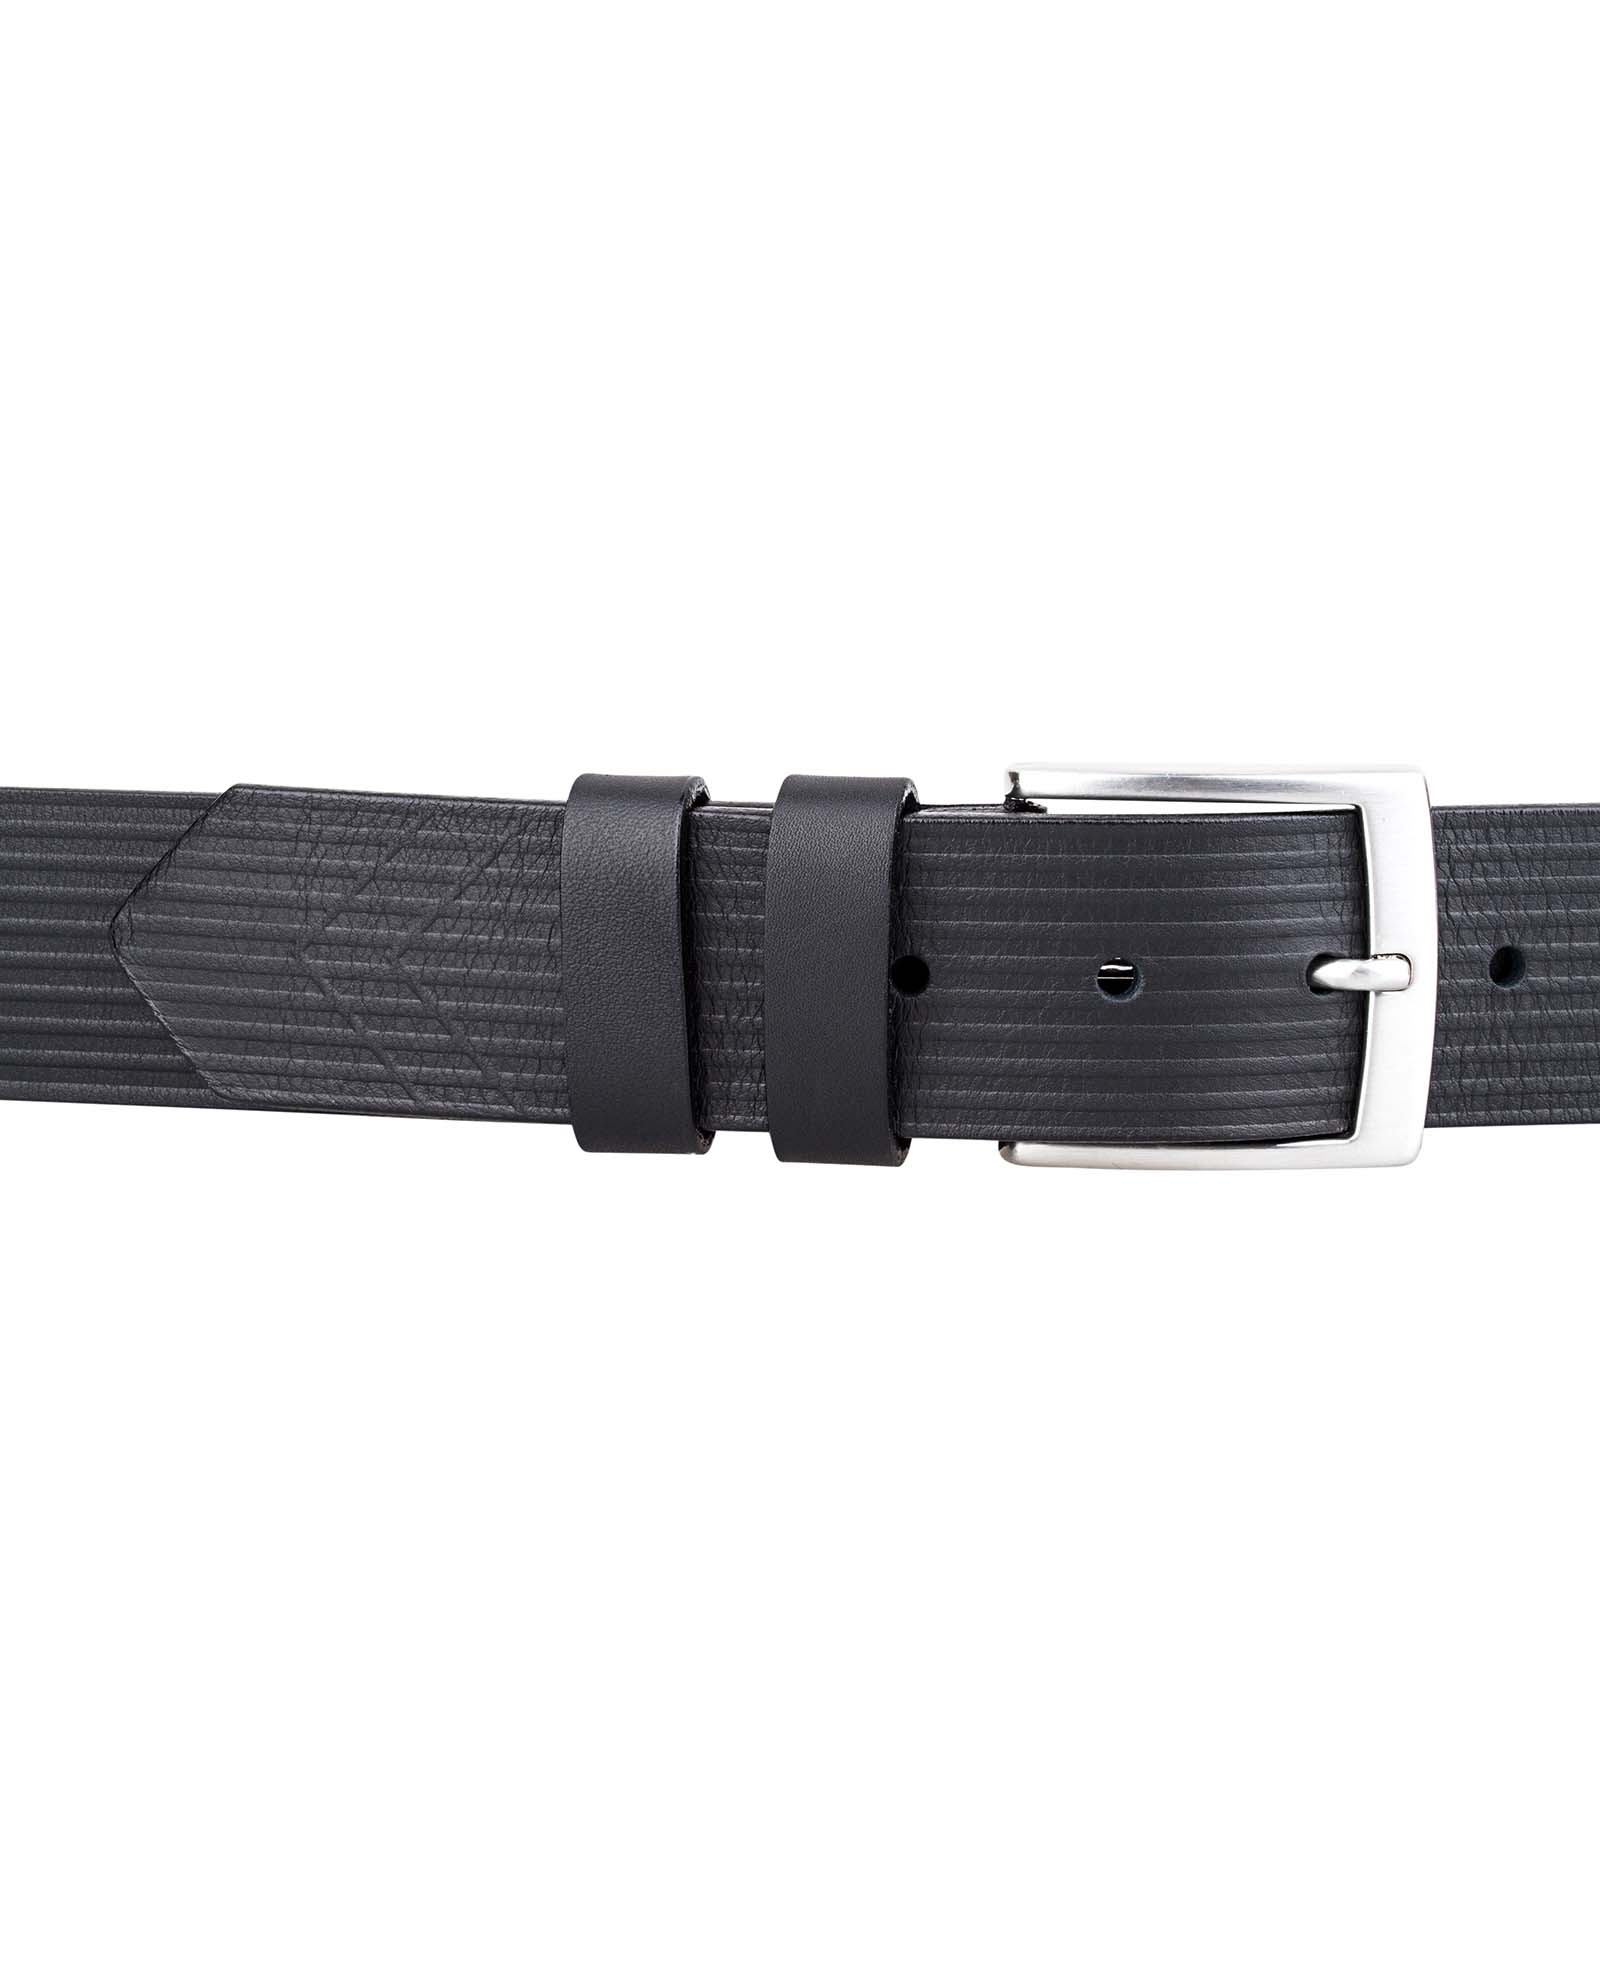 Buy Black Full Grain Leather Belt | 1 1/2 inch Wide | Leather Belts 0